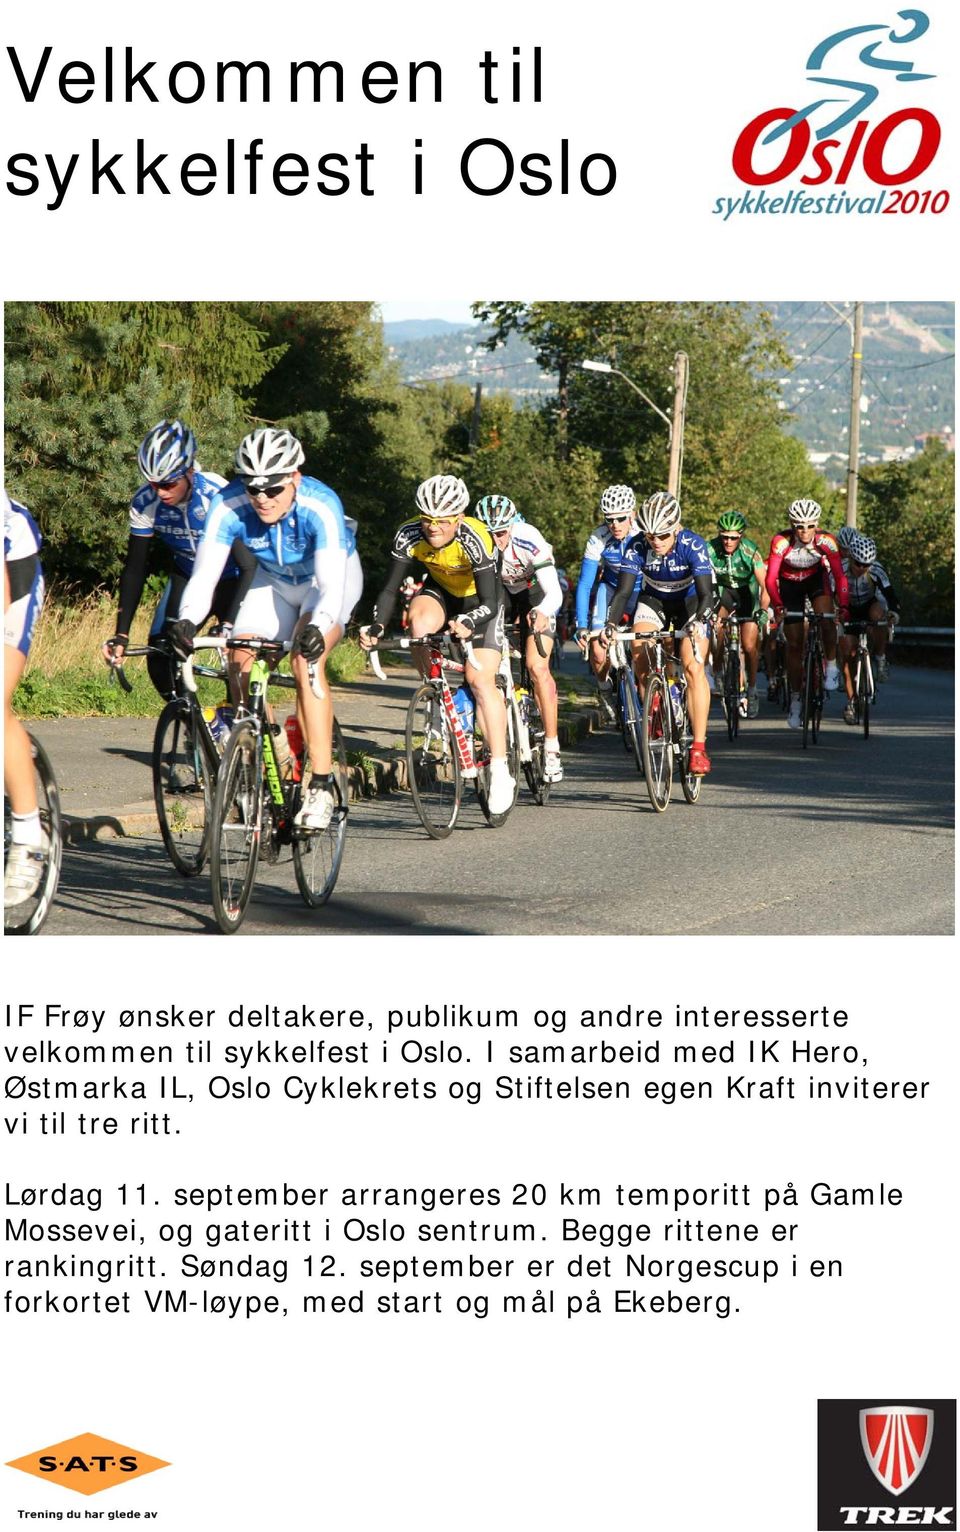 I samarbeid med IK Hero, Østmarka IL, Oslo Cyklekrets og Stiftelsen egen Kraft inviterer vi til tre ritt.